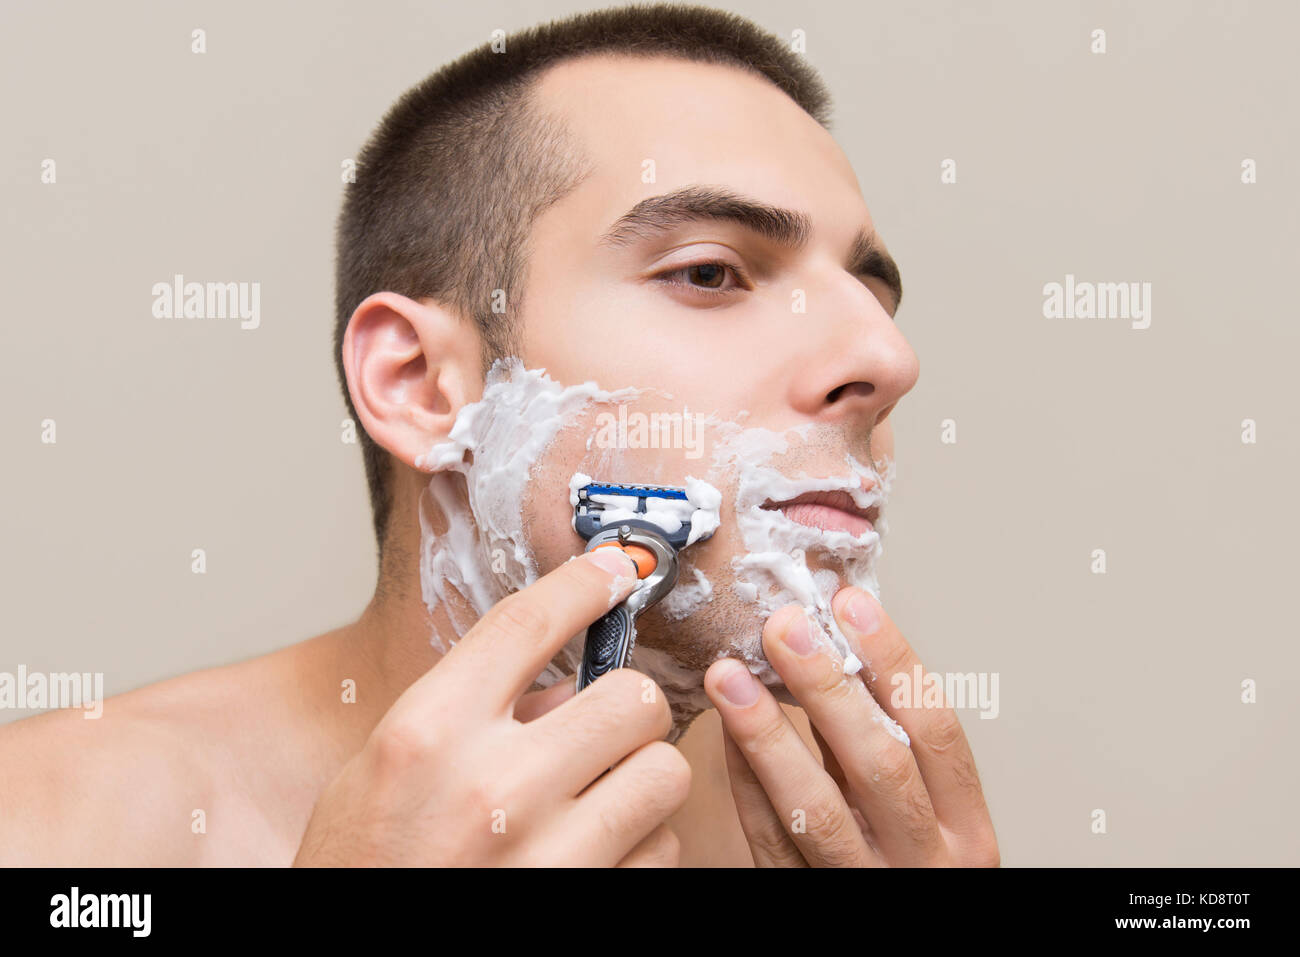 Мужчины бреет видео. Идеальное бритье для мужчин. Парень бреется. Первое бритье.